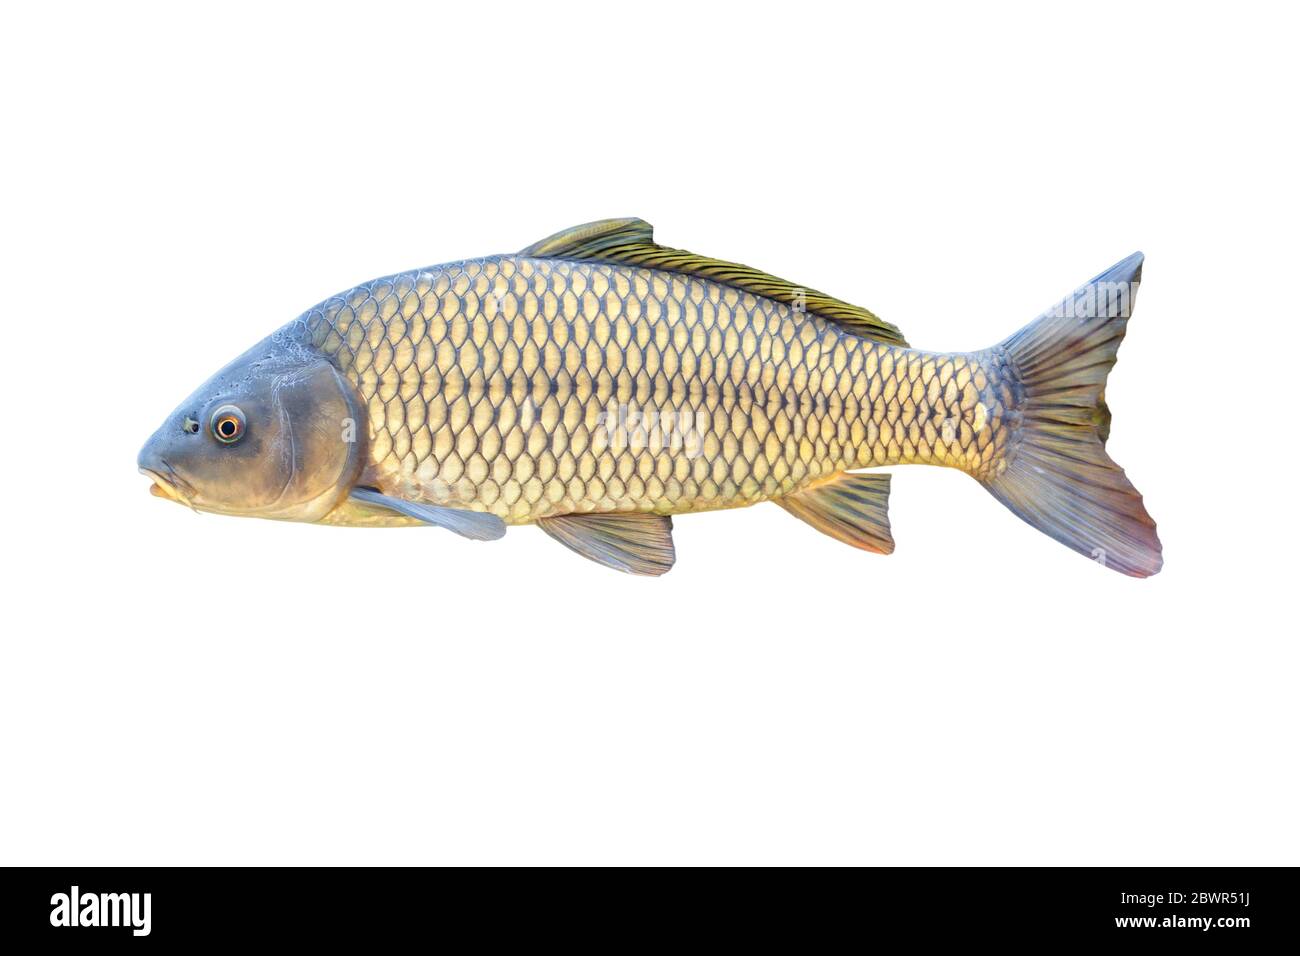 Carpa europea o Cyprinus carpio, una specie di pesci di acqua dolce. Isolato su bianco. Foto Stock